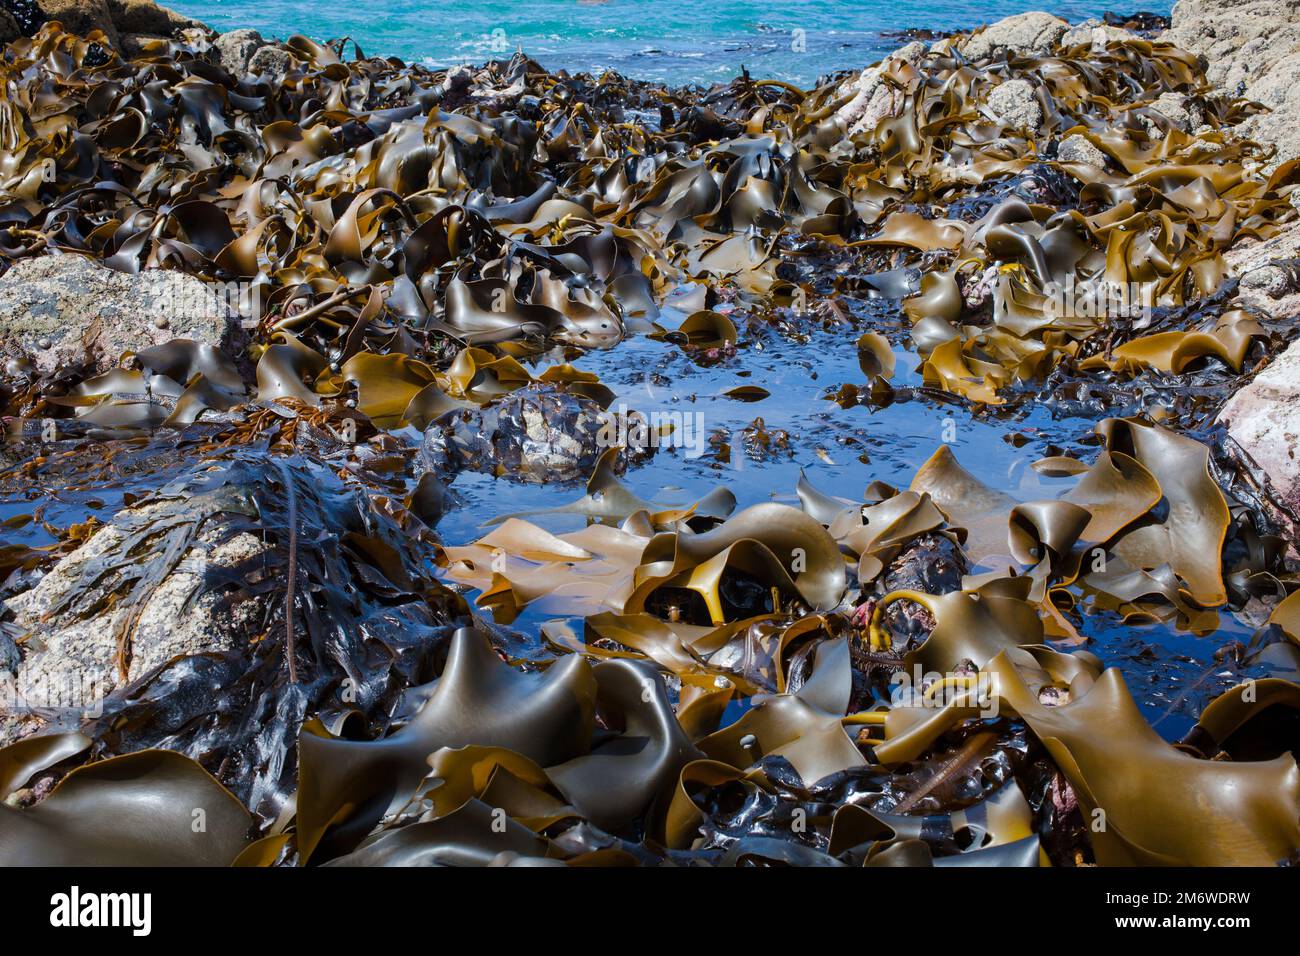 Un regard sur la vie en Nouvelle-Zélande : fruits de mer abondants, algues comestibles et coquillages sur une côte rocheuse. (Undaria; Kelp de taureau; Kelp de vessie; moules). Banque D'Images